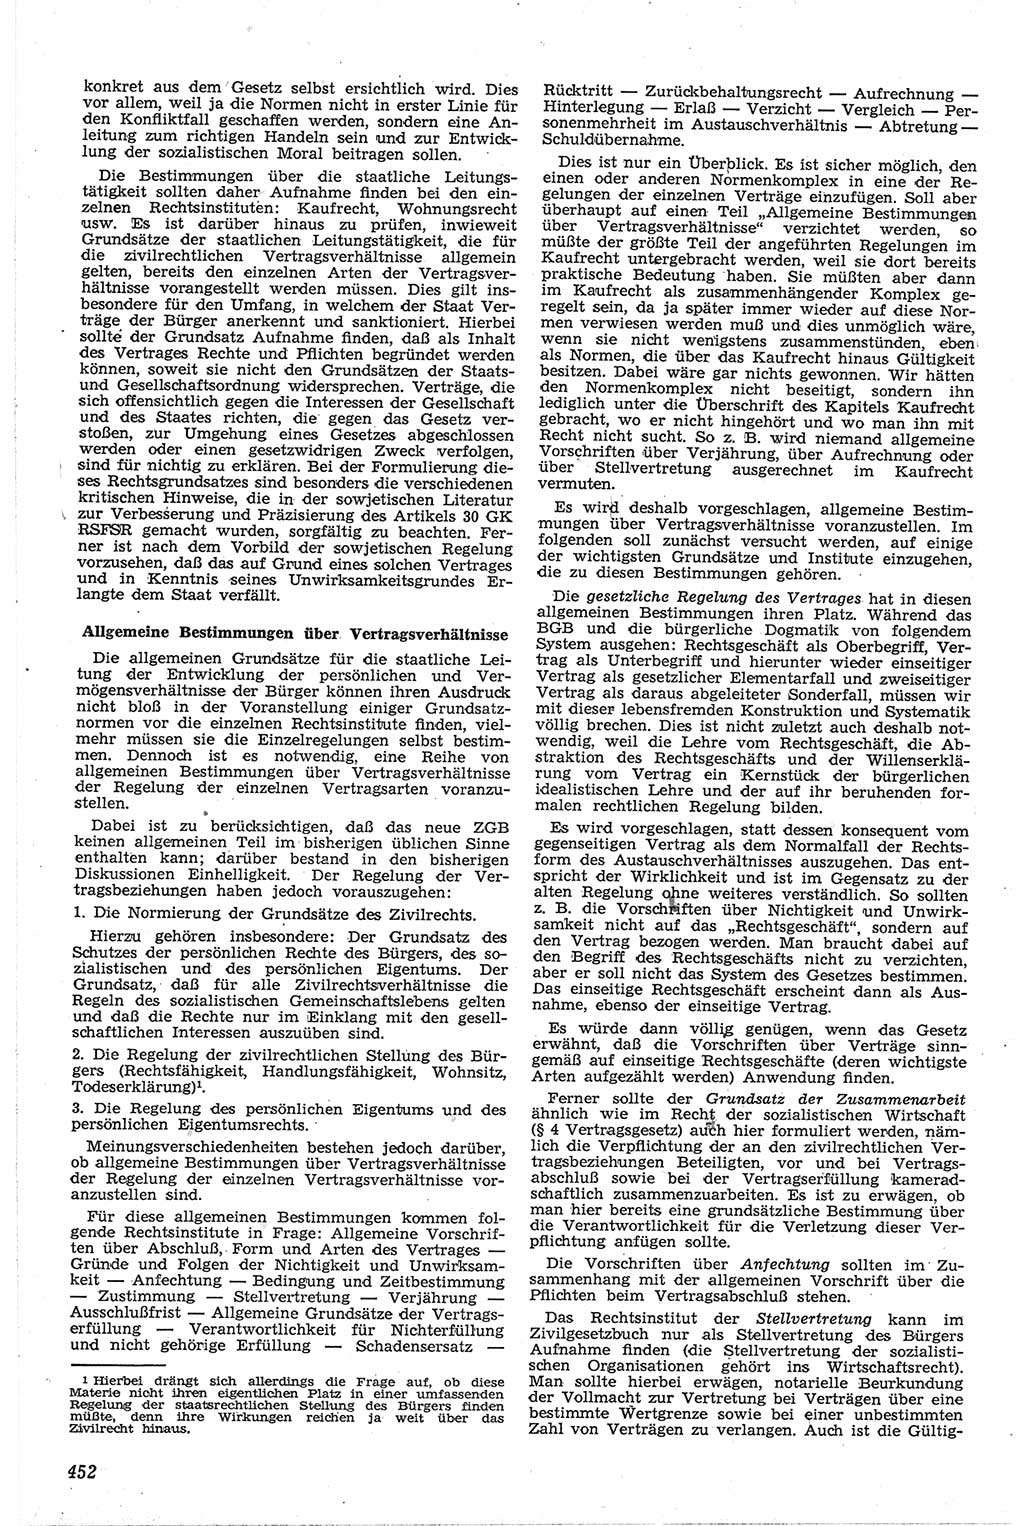 Neue Justiz (NJ), Zeitschrift für Recht und Rechtswissenschaft [Deutsche Demokratische Republik (DDR)], 13. Jahrgang 1959, Seite 452 (NJ DDR 1959, S. 452)